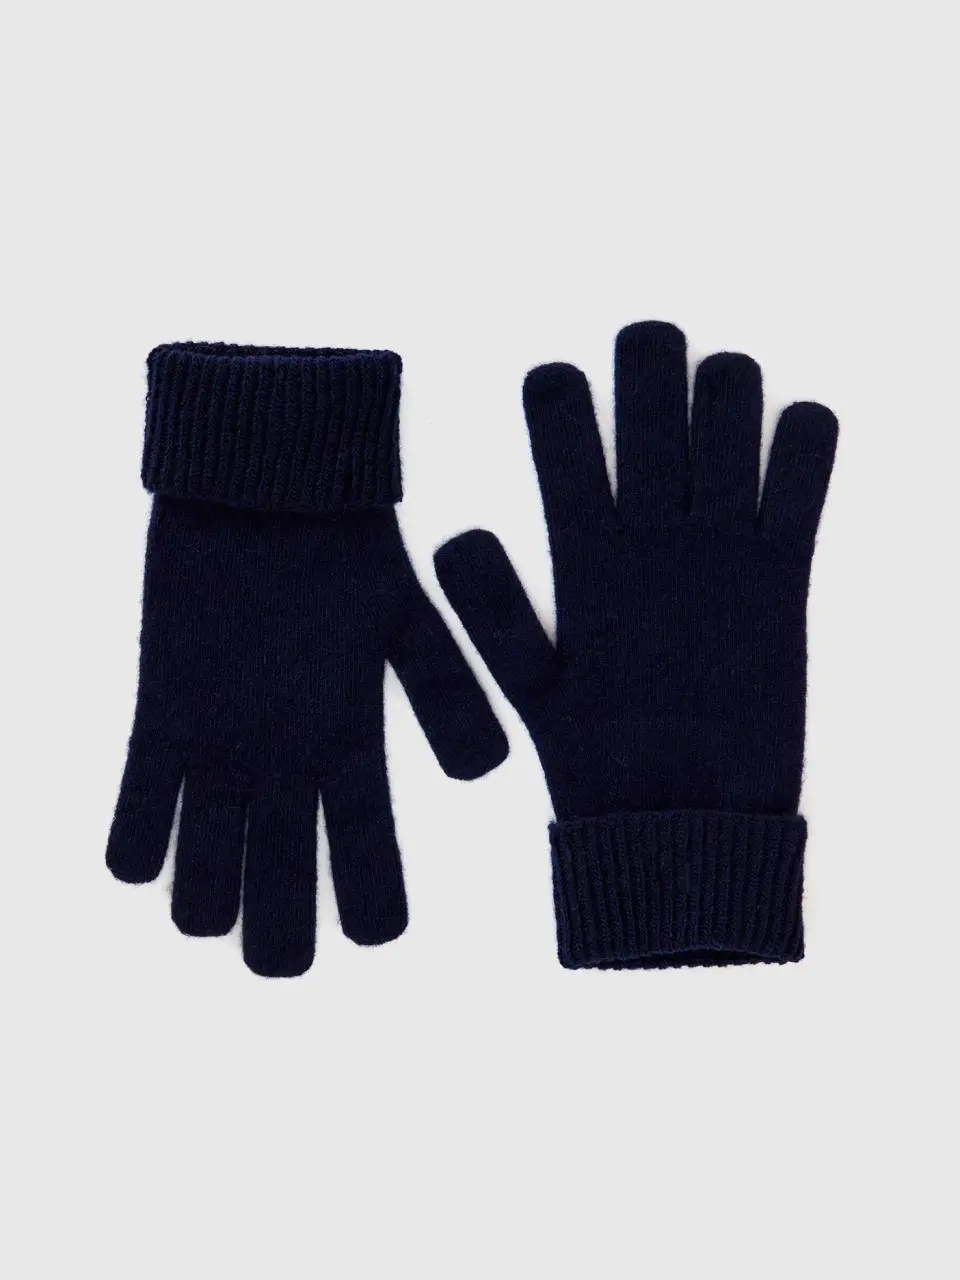 Benetton dark blue gloves in pure merino wool. 1